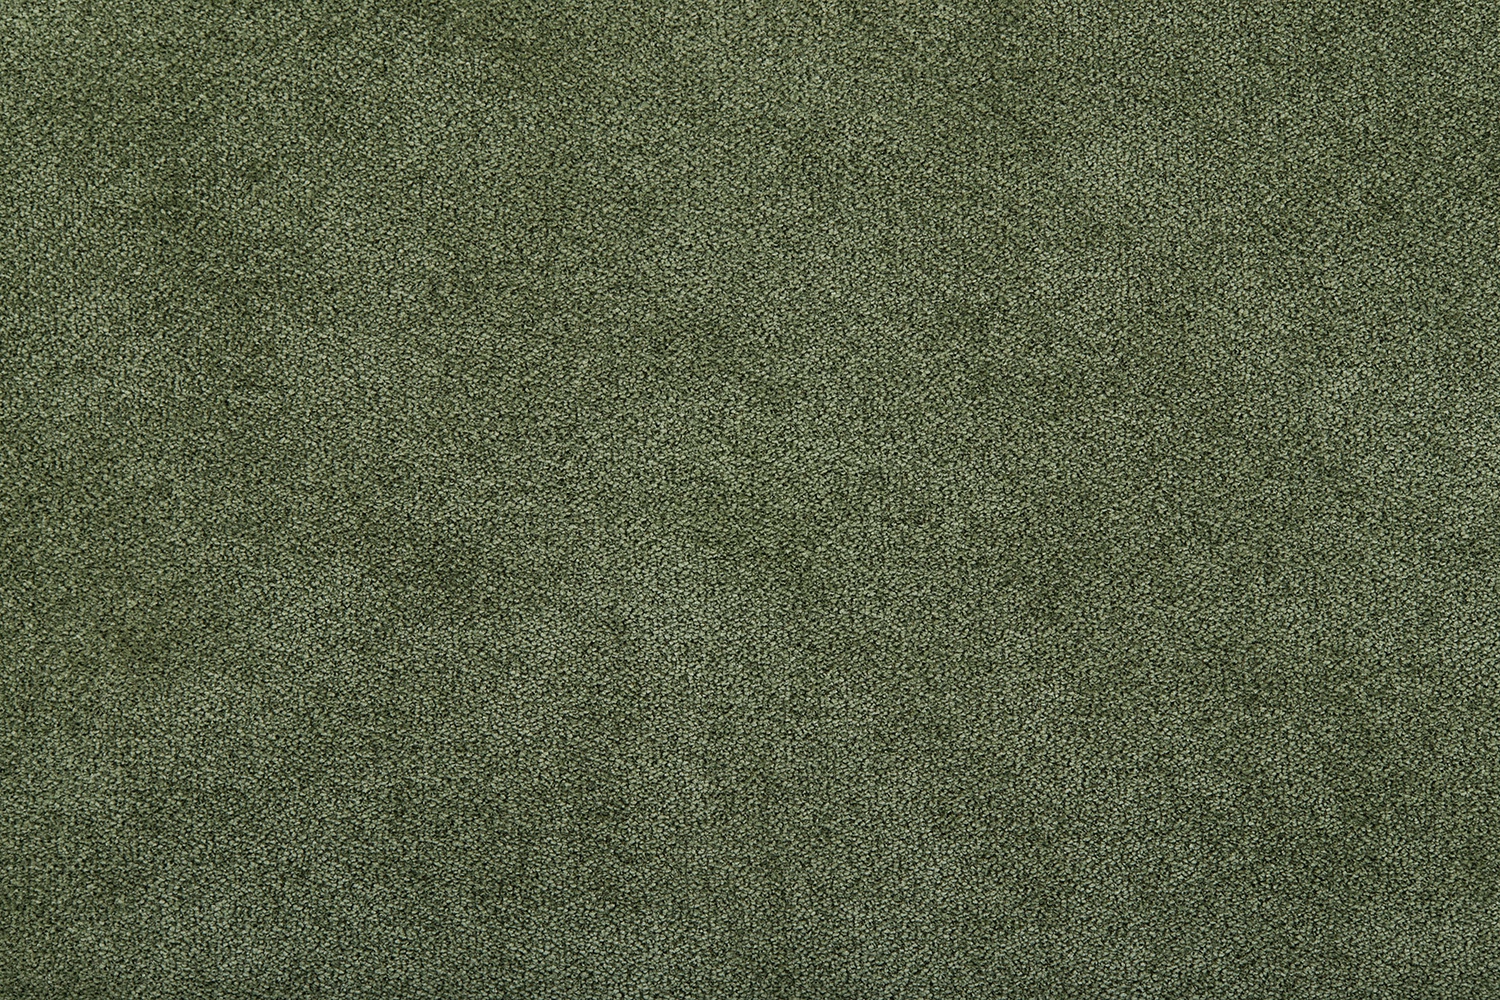 06 Green Grass